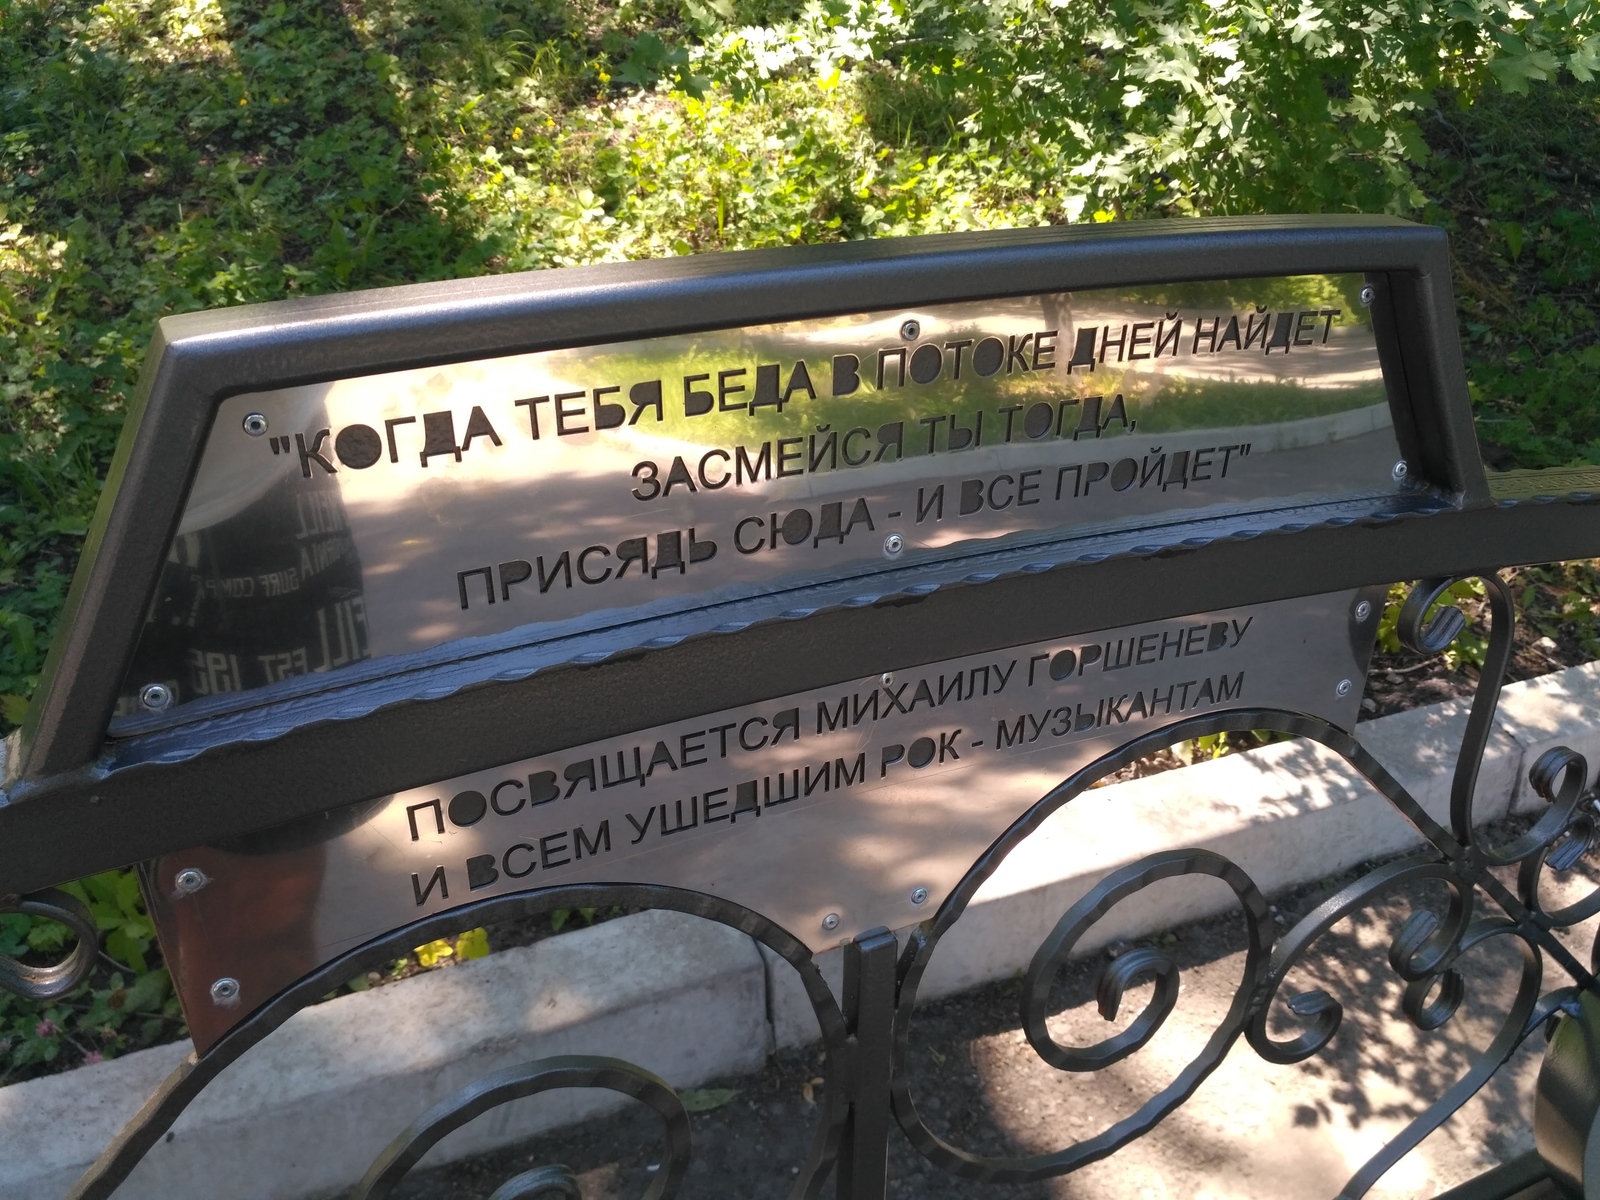 Лавочка памятник Горшеневу в Красноярске